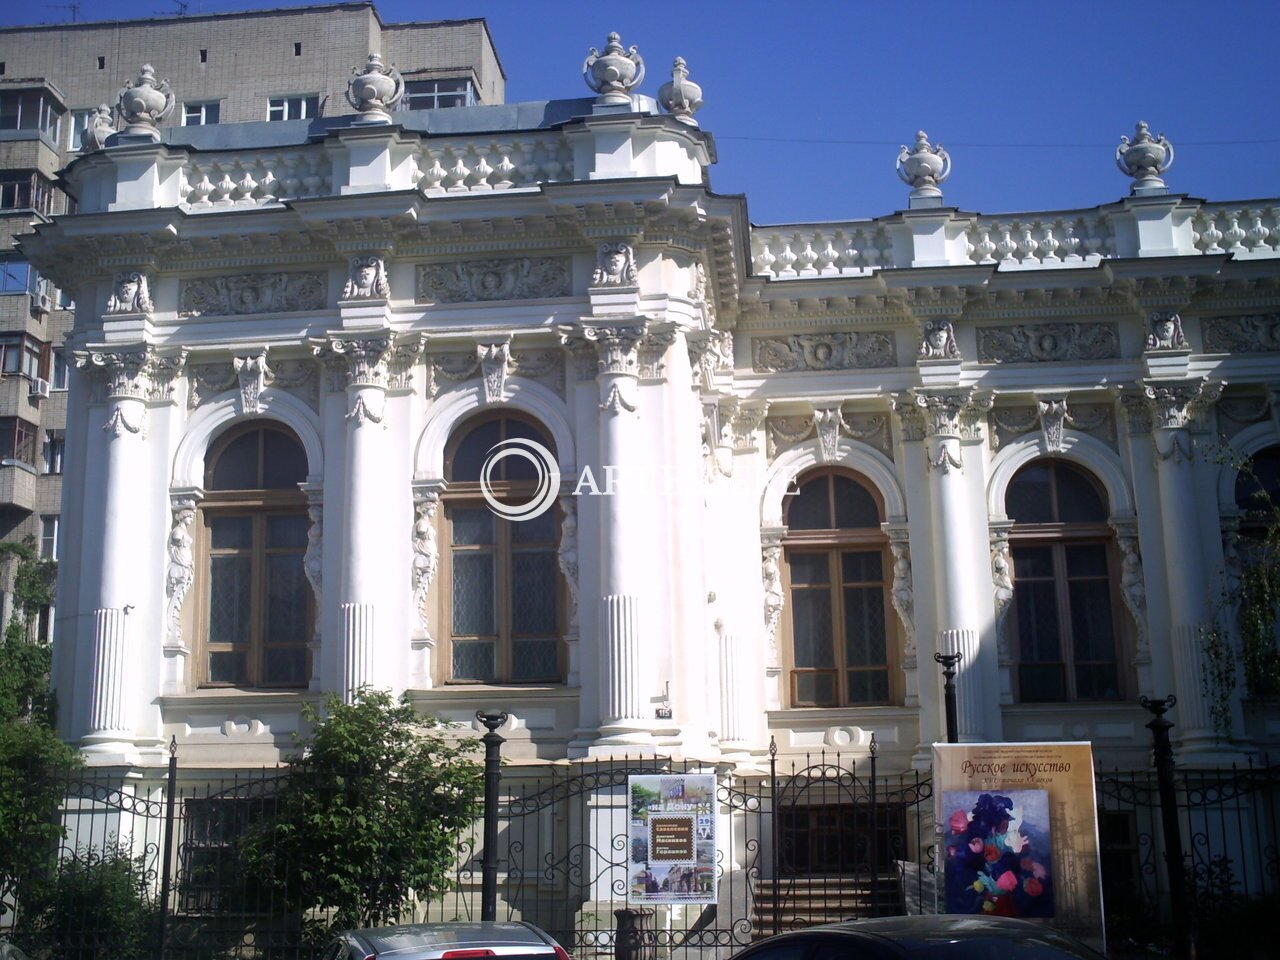 The Rostov Regional Museum of Fine Arts